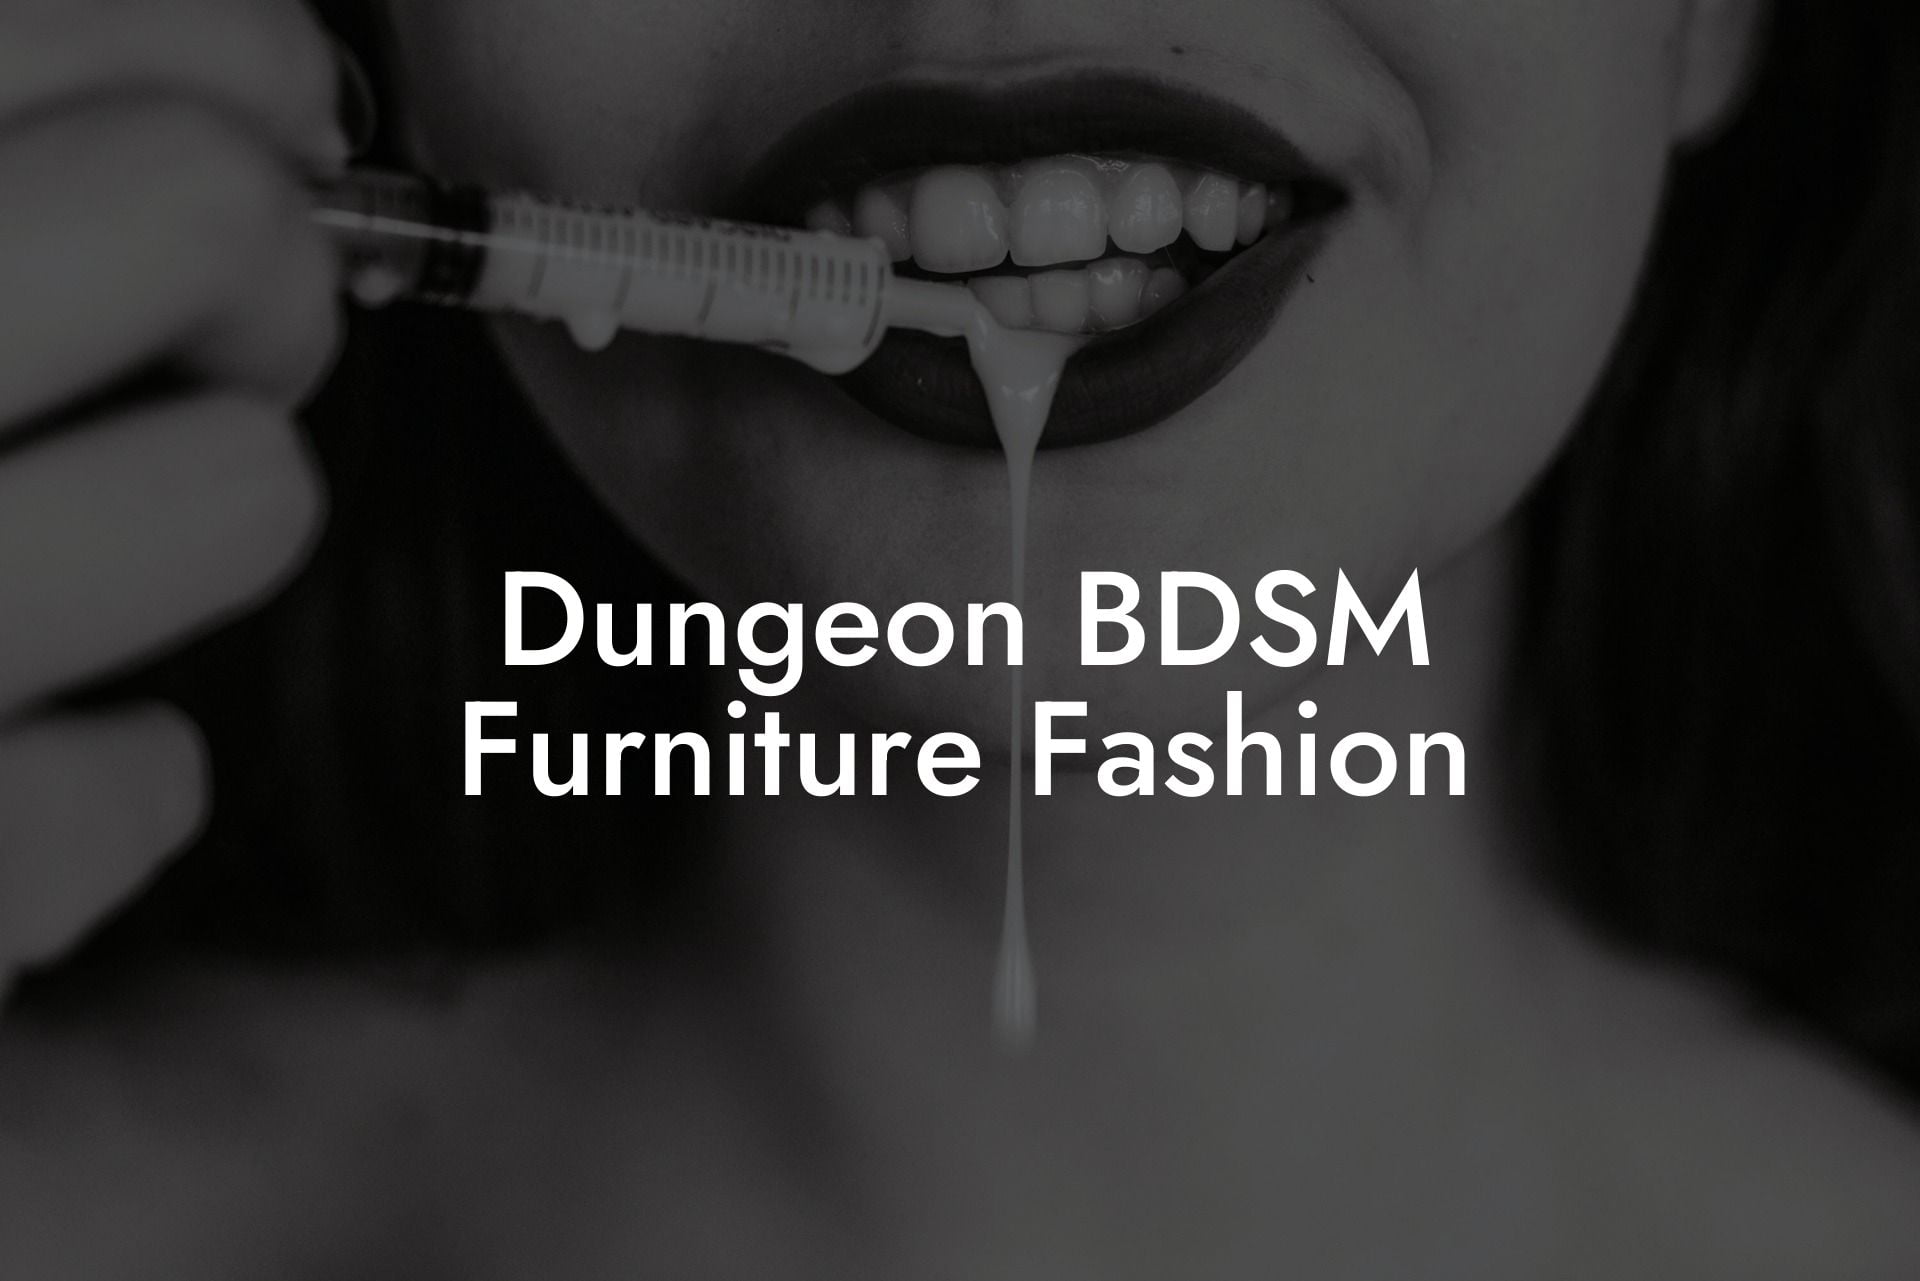 Dungeon BDSM Furniture Fashion